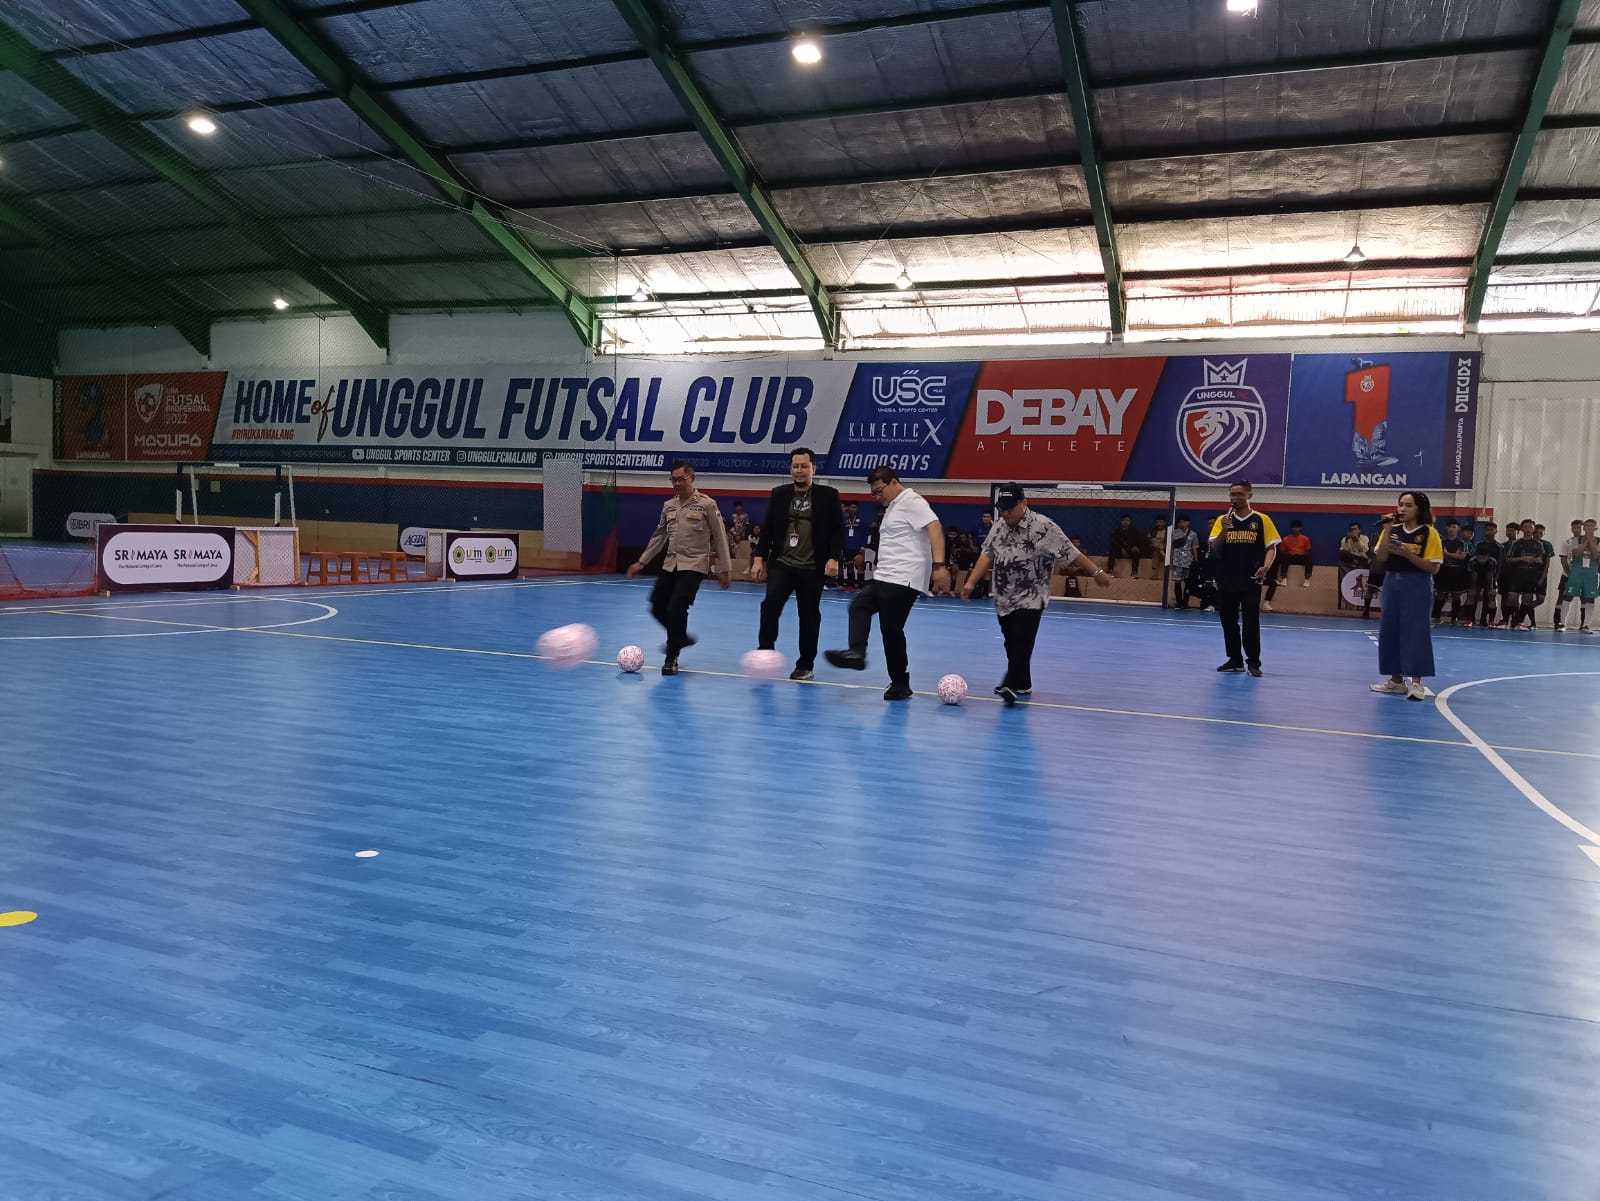 Wabup Malang, Didik Gatot Subroto beserta CEO Tugu Jatim ID, Irham Thoriq dan segenap perwakilan sponsorship melakukan tendangan ke gawang sebagai penanda pembukaan Tugu Jatim ID Futsal cup.